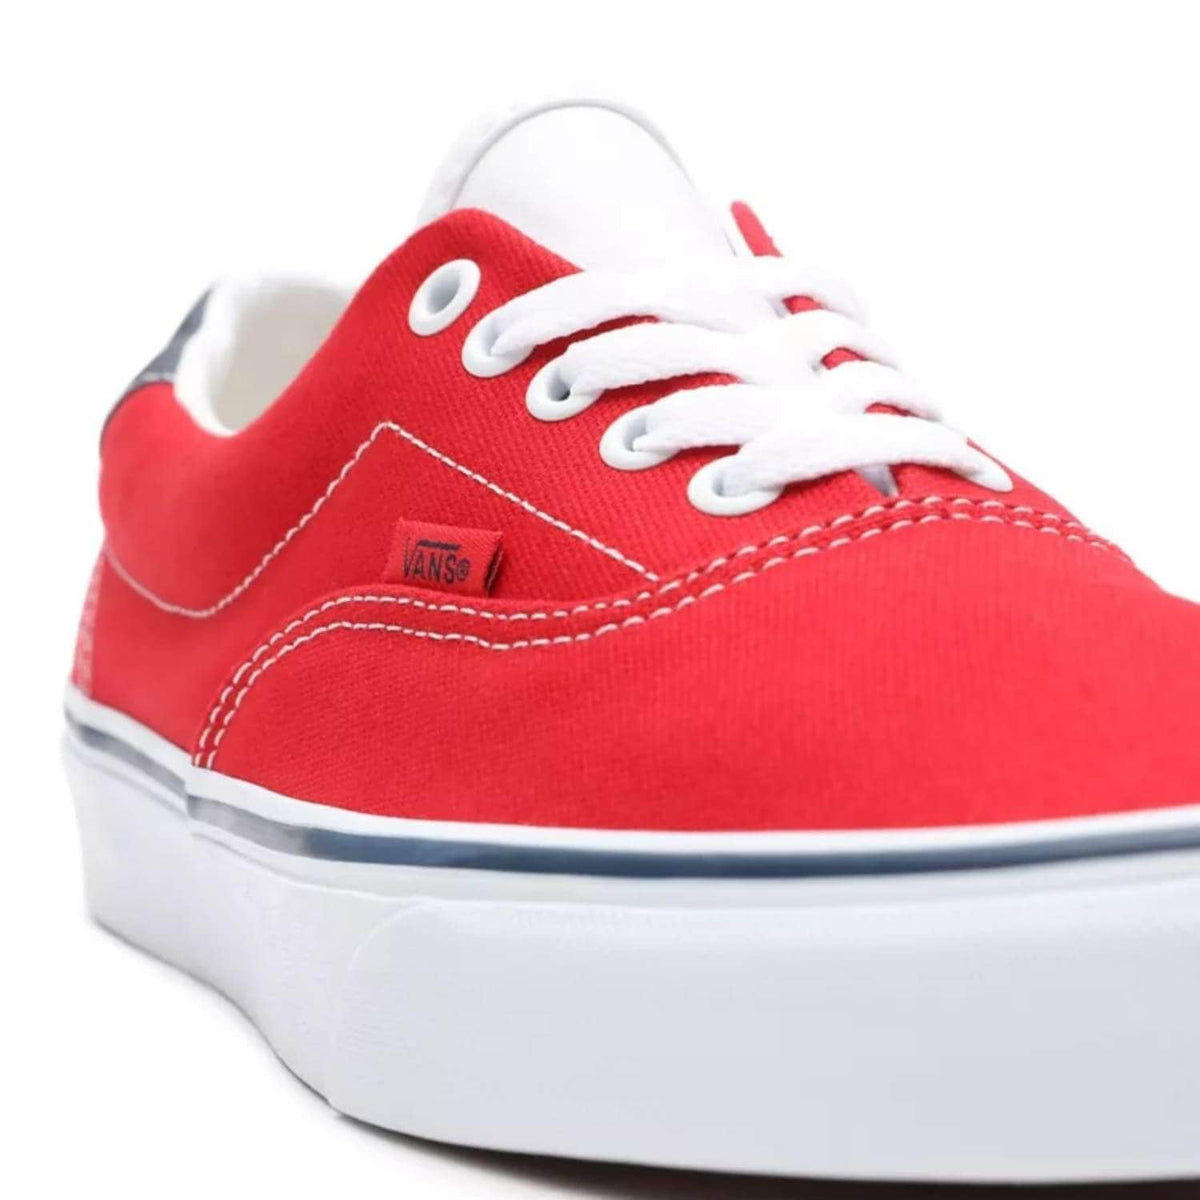 Vans C&amp;L Era 59 Shoes - Red/True White - Mens Skate Shoes by Vans